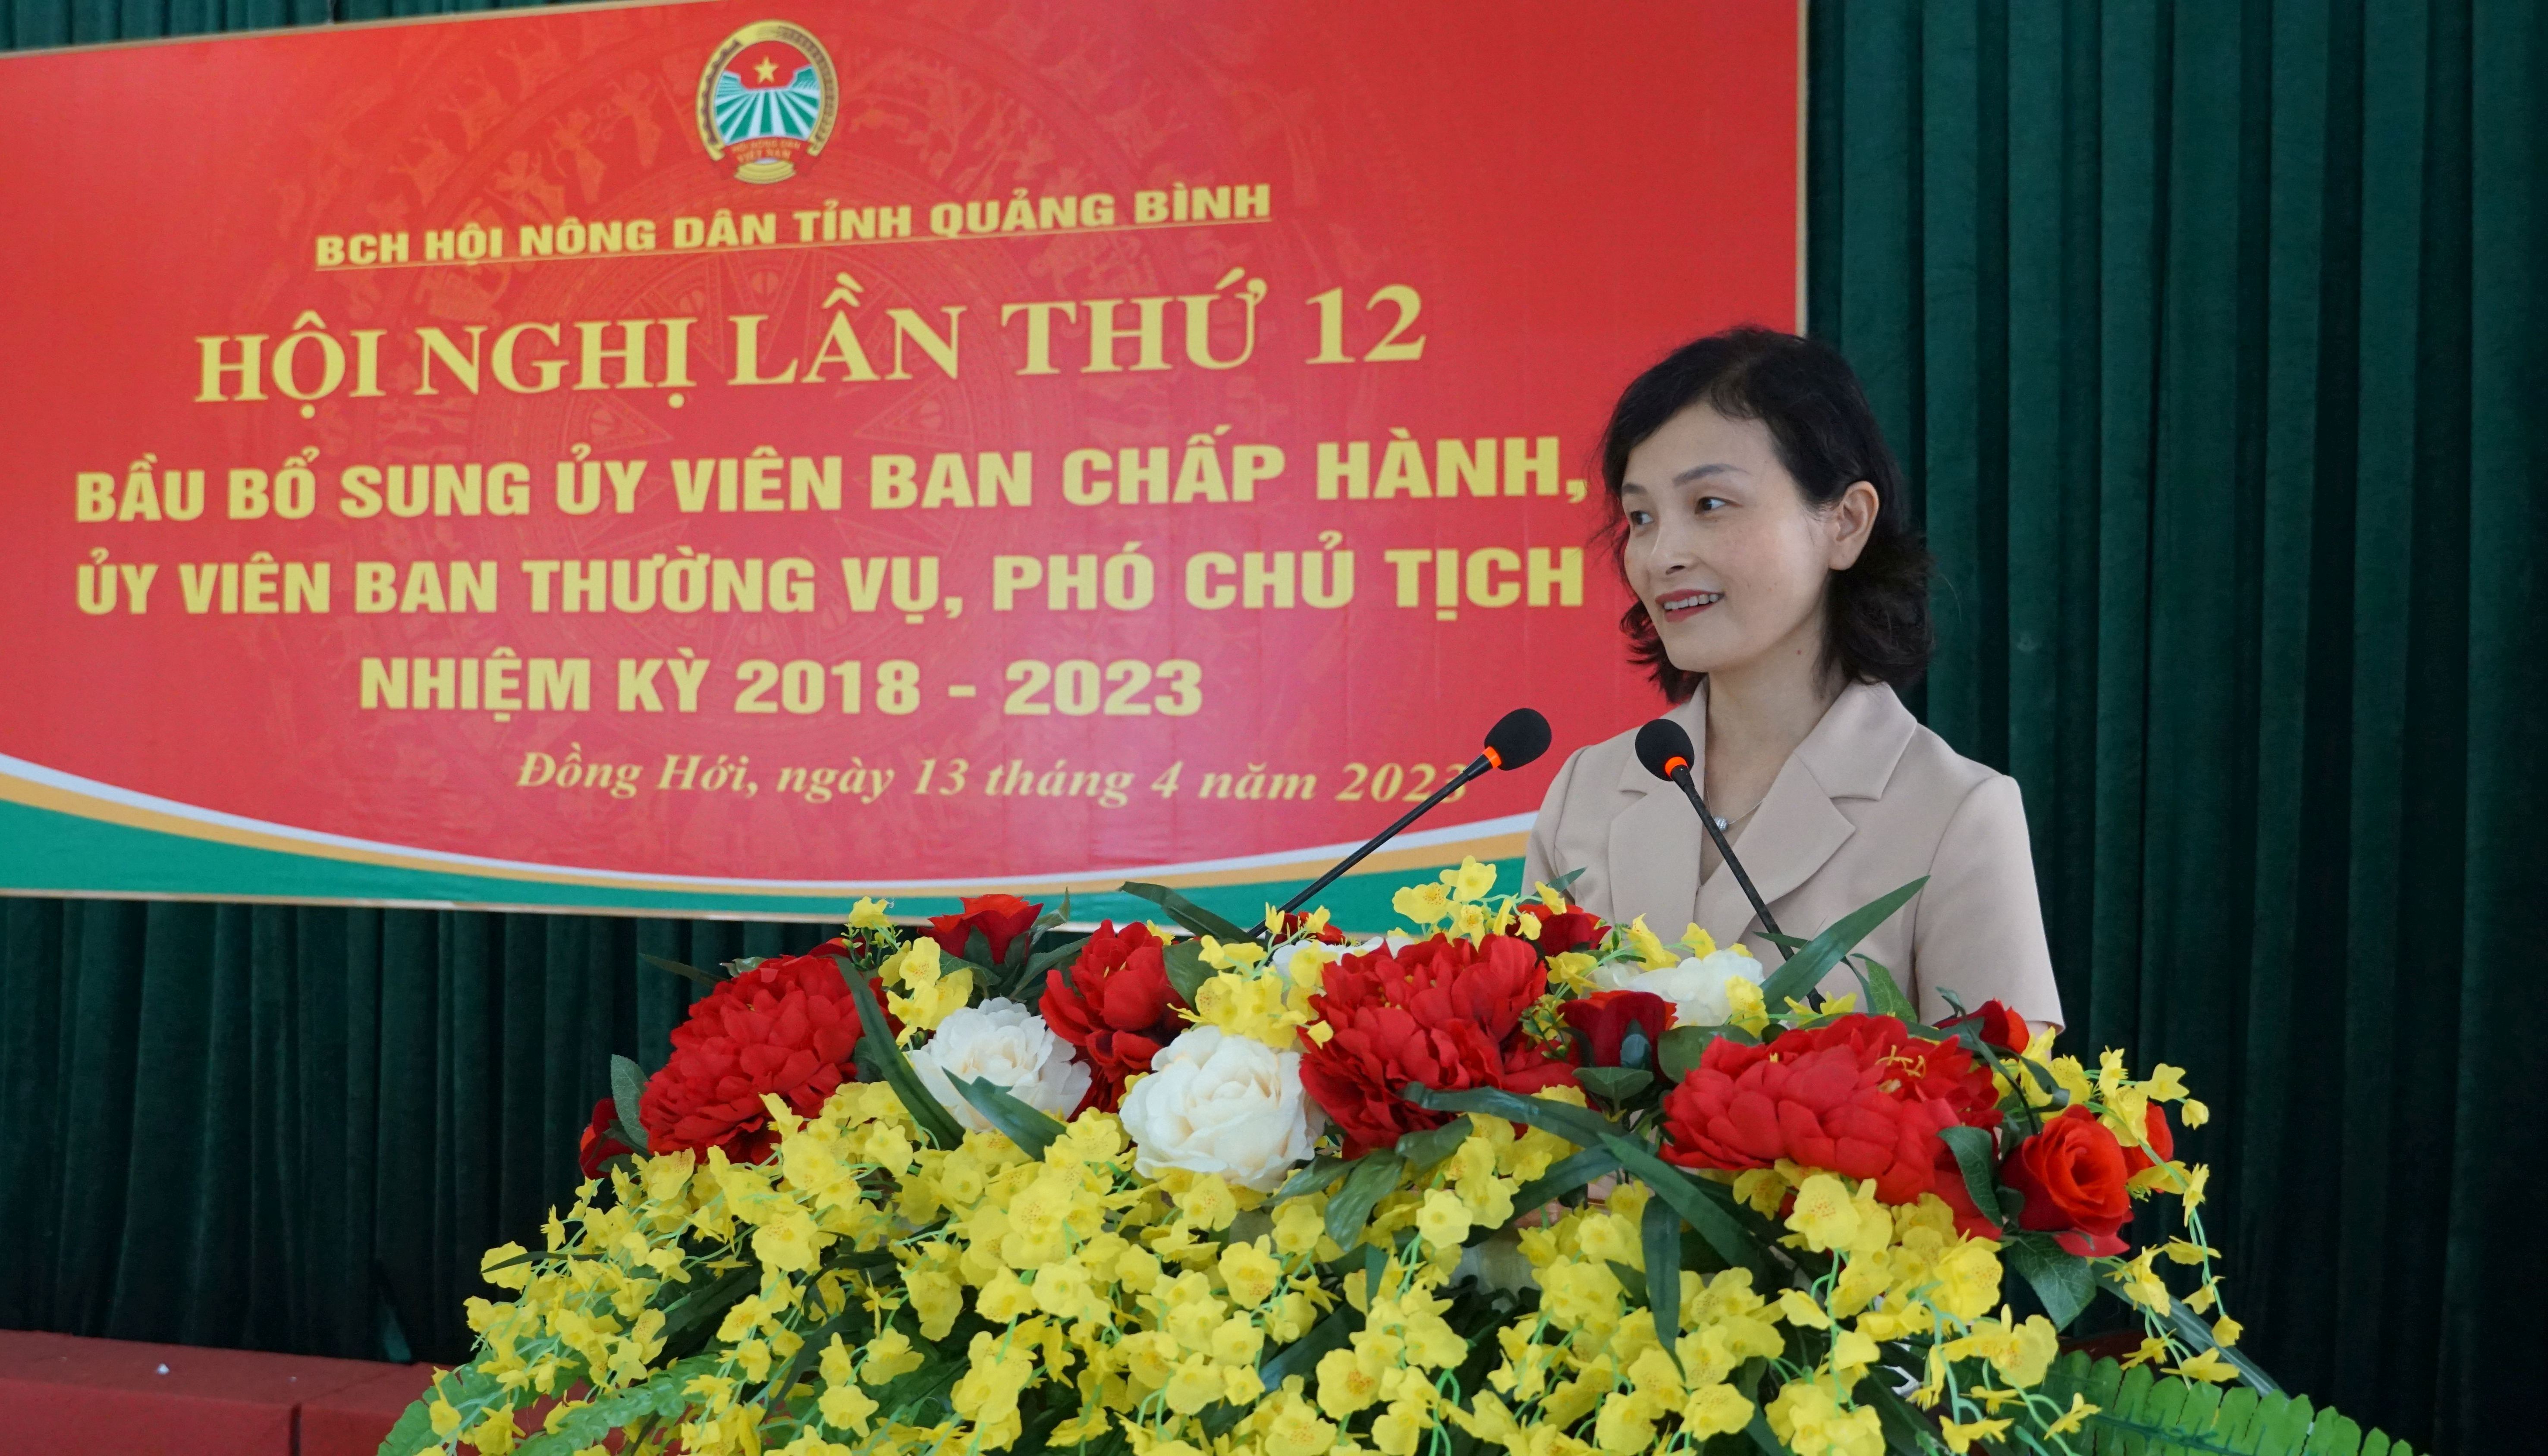 Đồng chí tân Phó Chủ tịch Hội Nông dân tỉnh Đỗ Thị Hoài Thu phát biểu nhận nhiệm vụ.